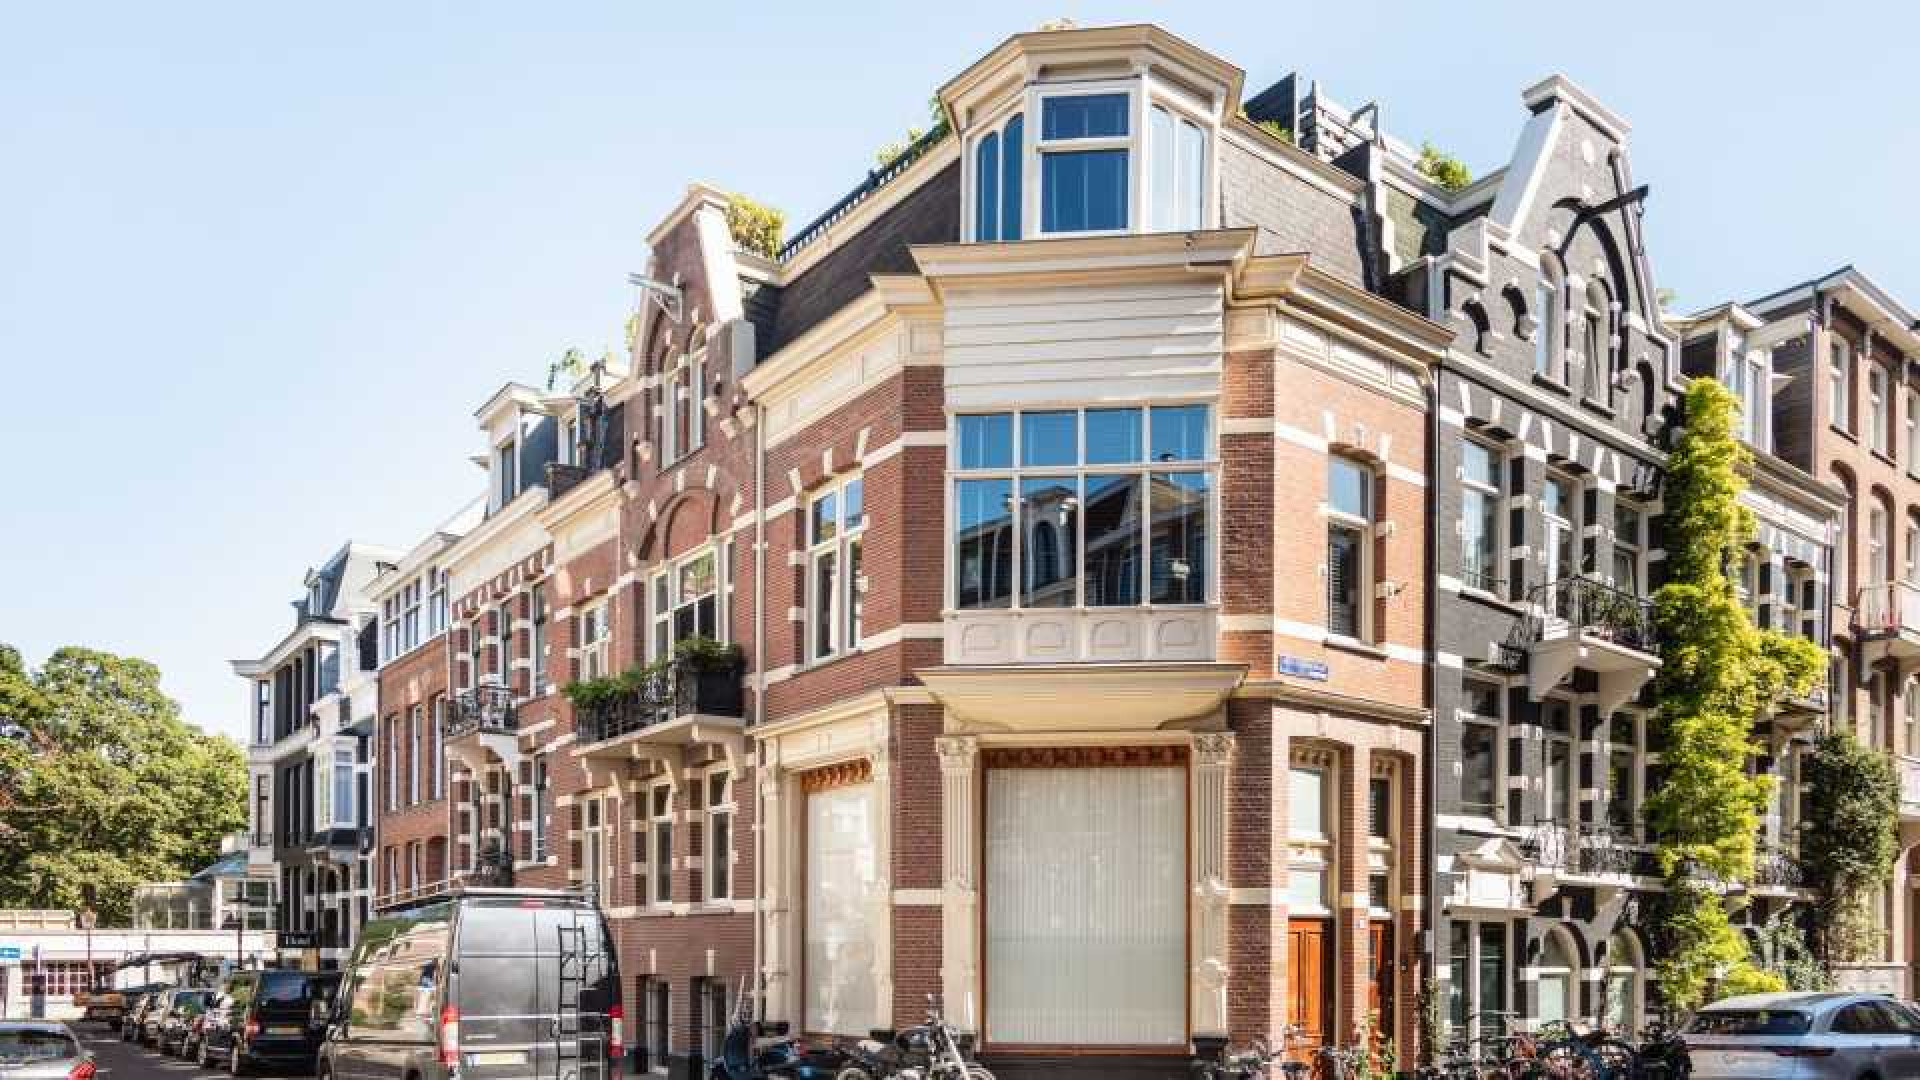 Leco van Zadelhoff zet zijn luxe dubbele bovenhuis te koop.